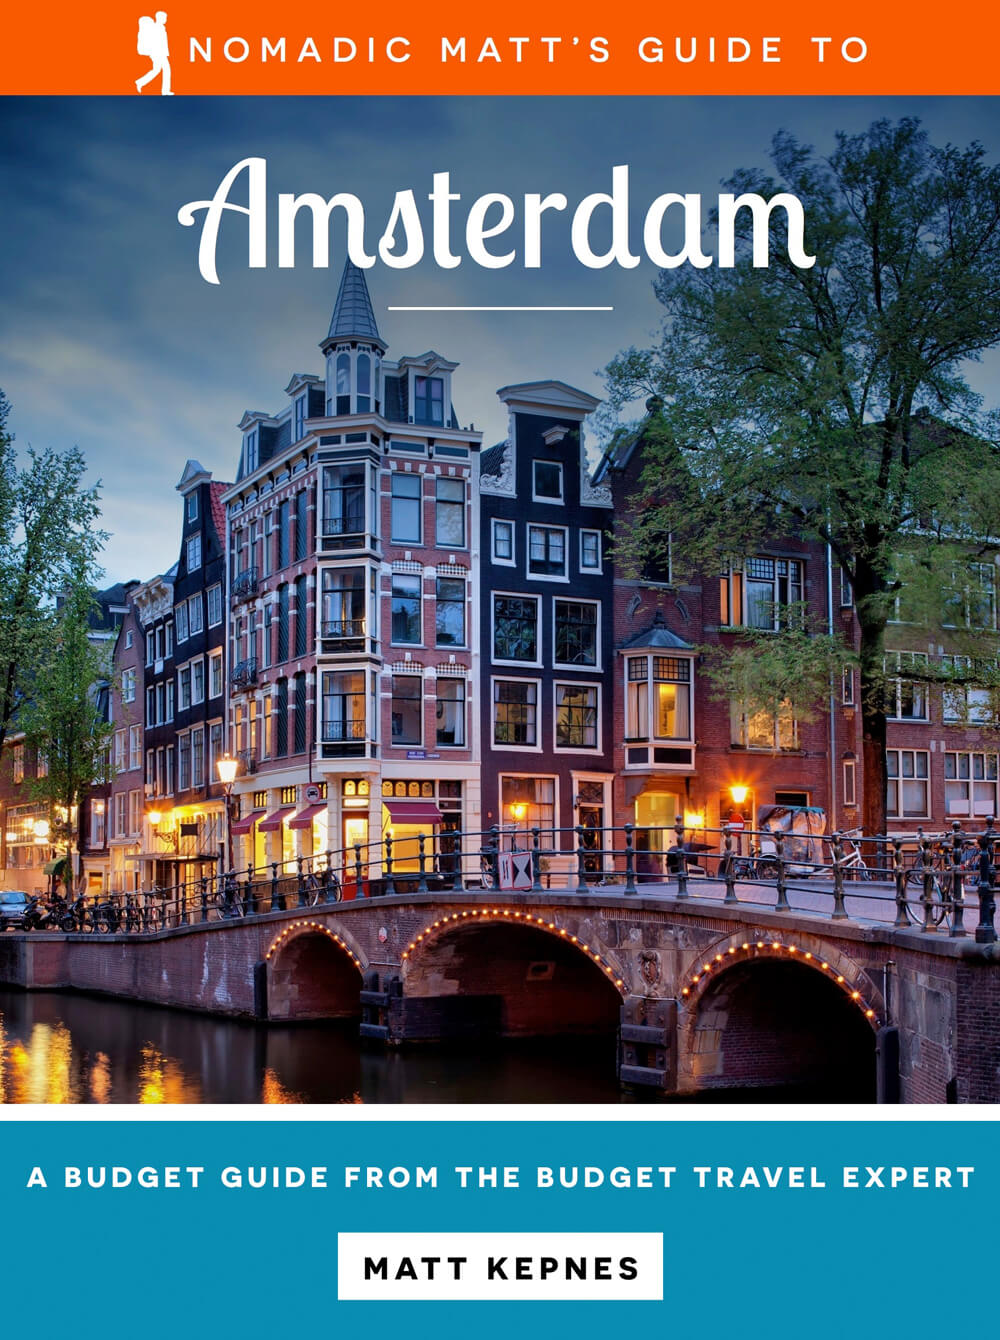 Nomadic Matt's Guide to Amsterdam